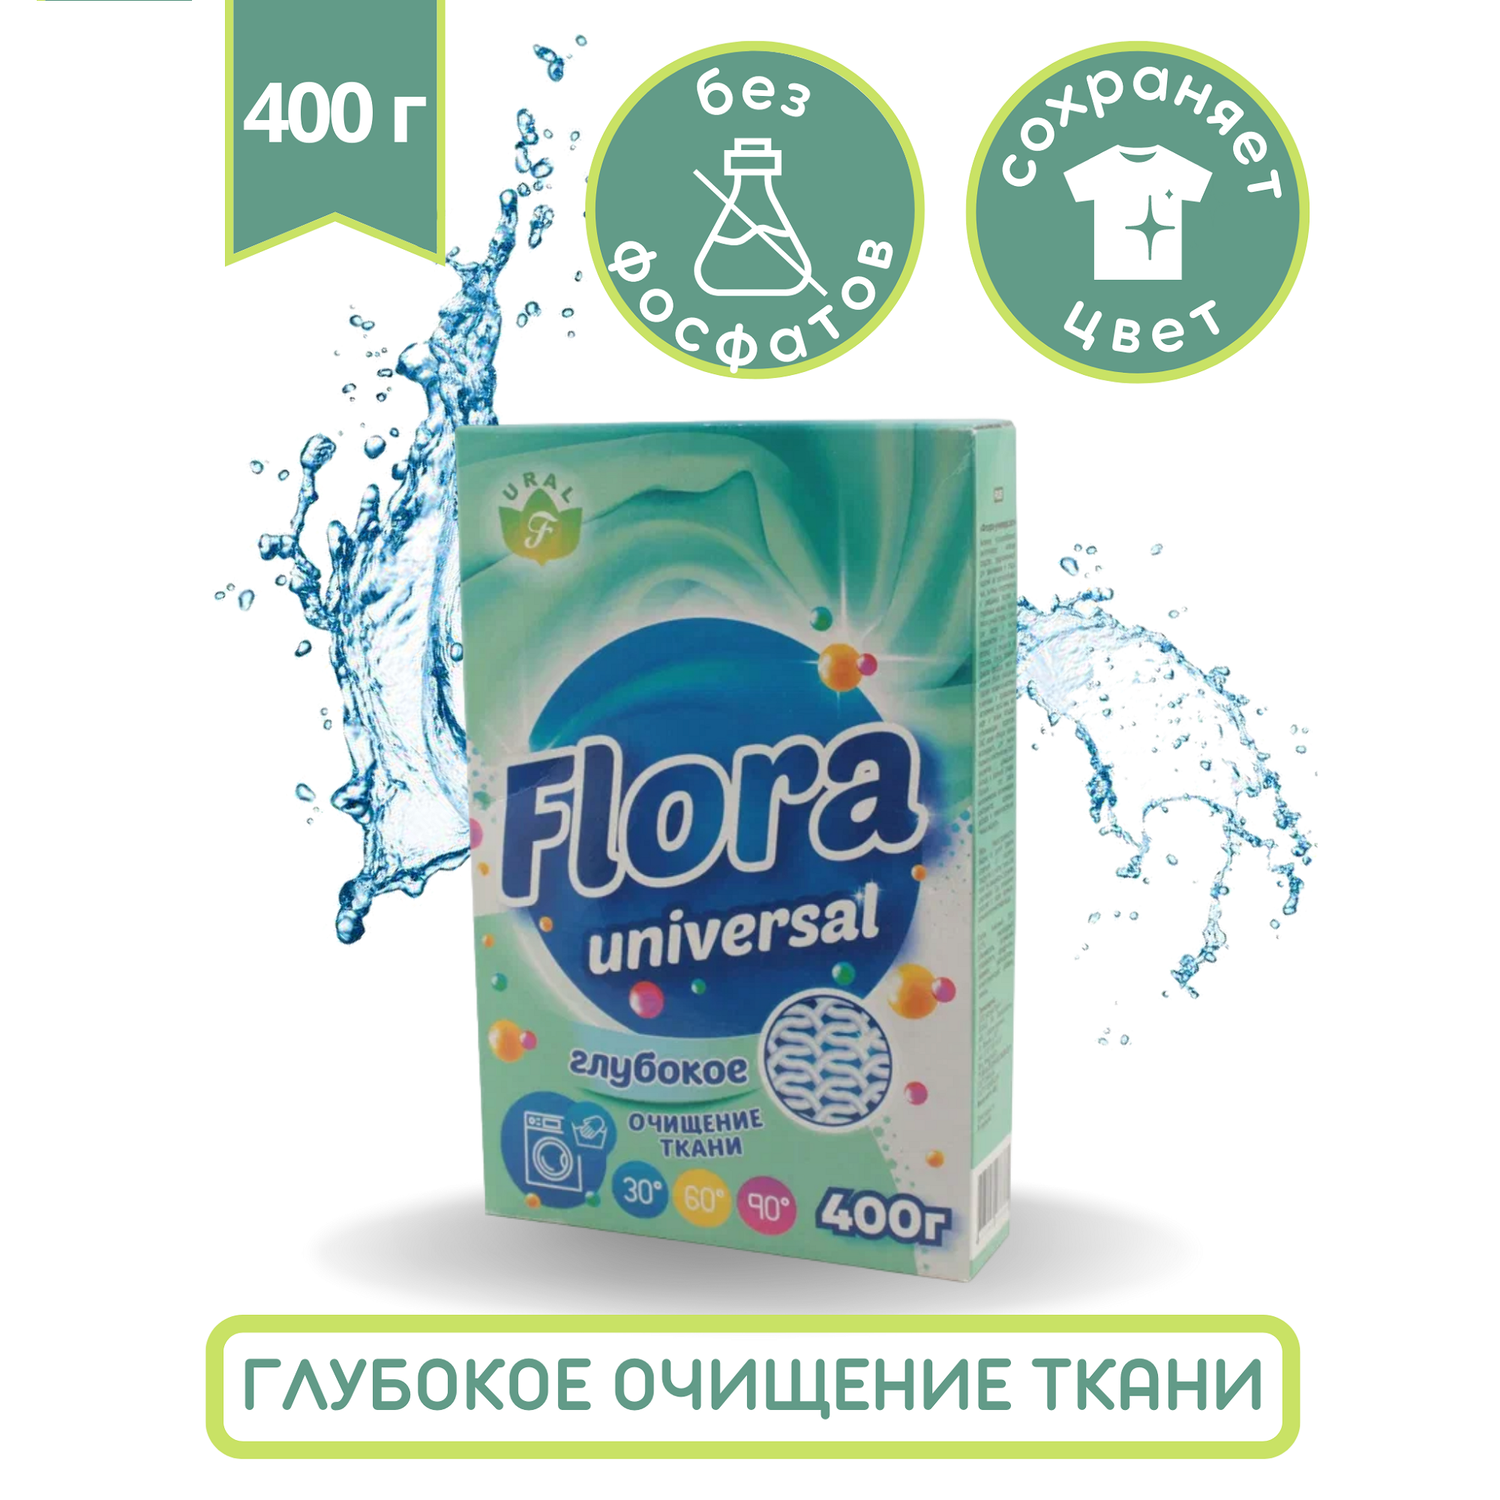 Порошок Flora 400 гр универсал - фото 1